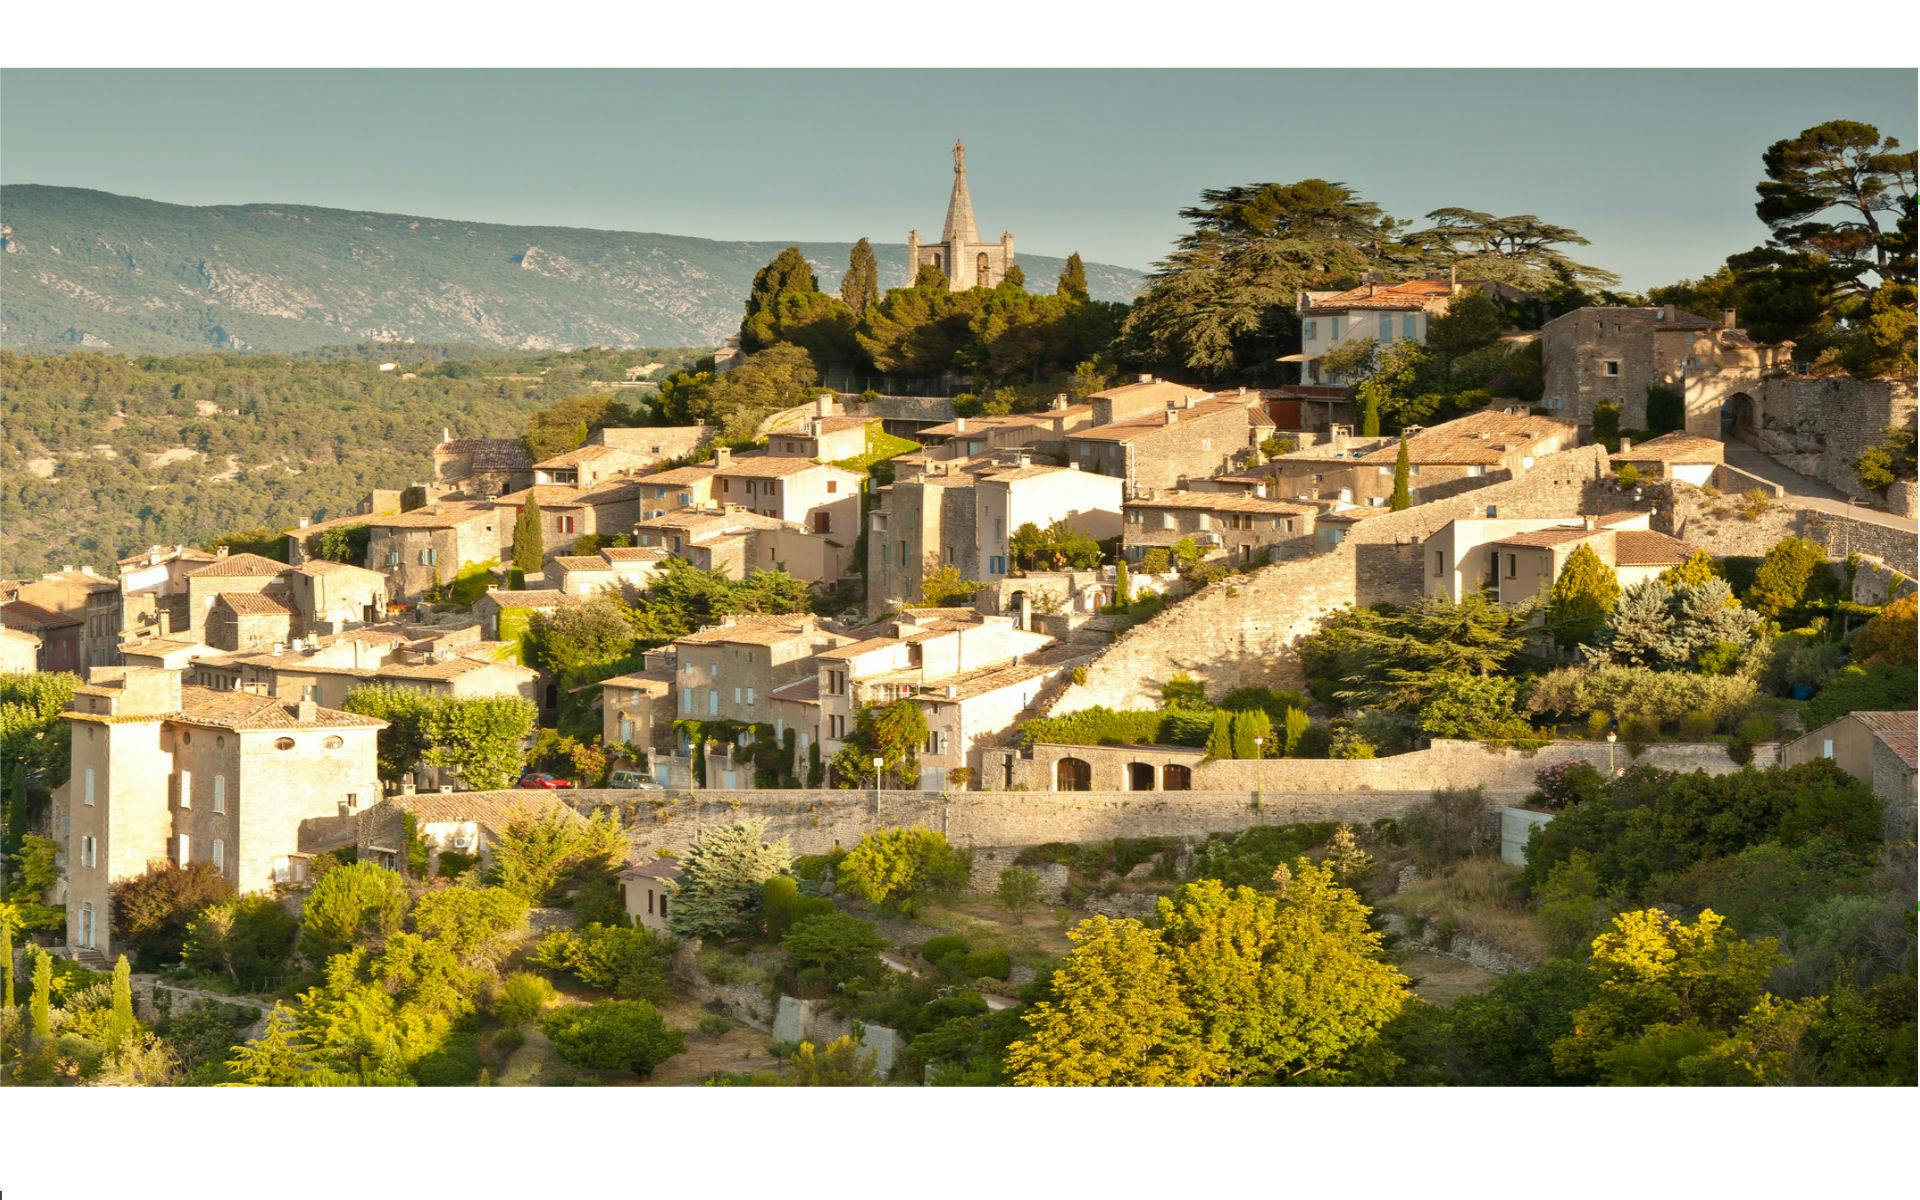 Tour de medio día por los pueblos de las colinas de Luberon desde Aix en Provence